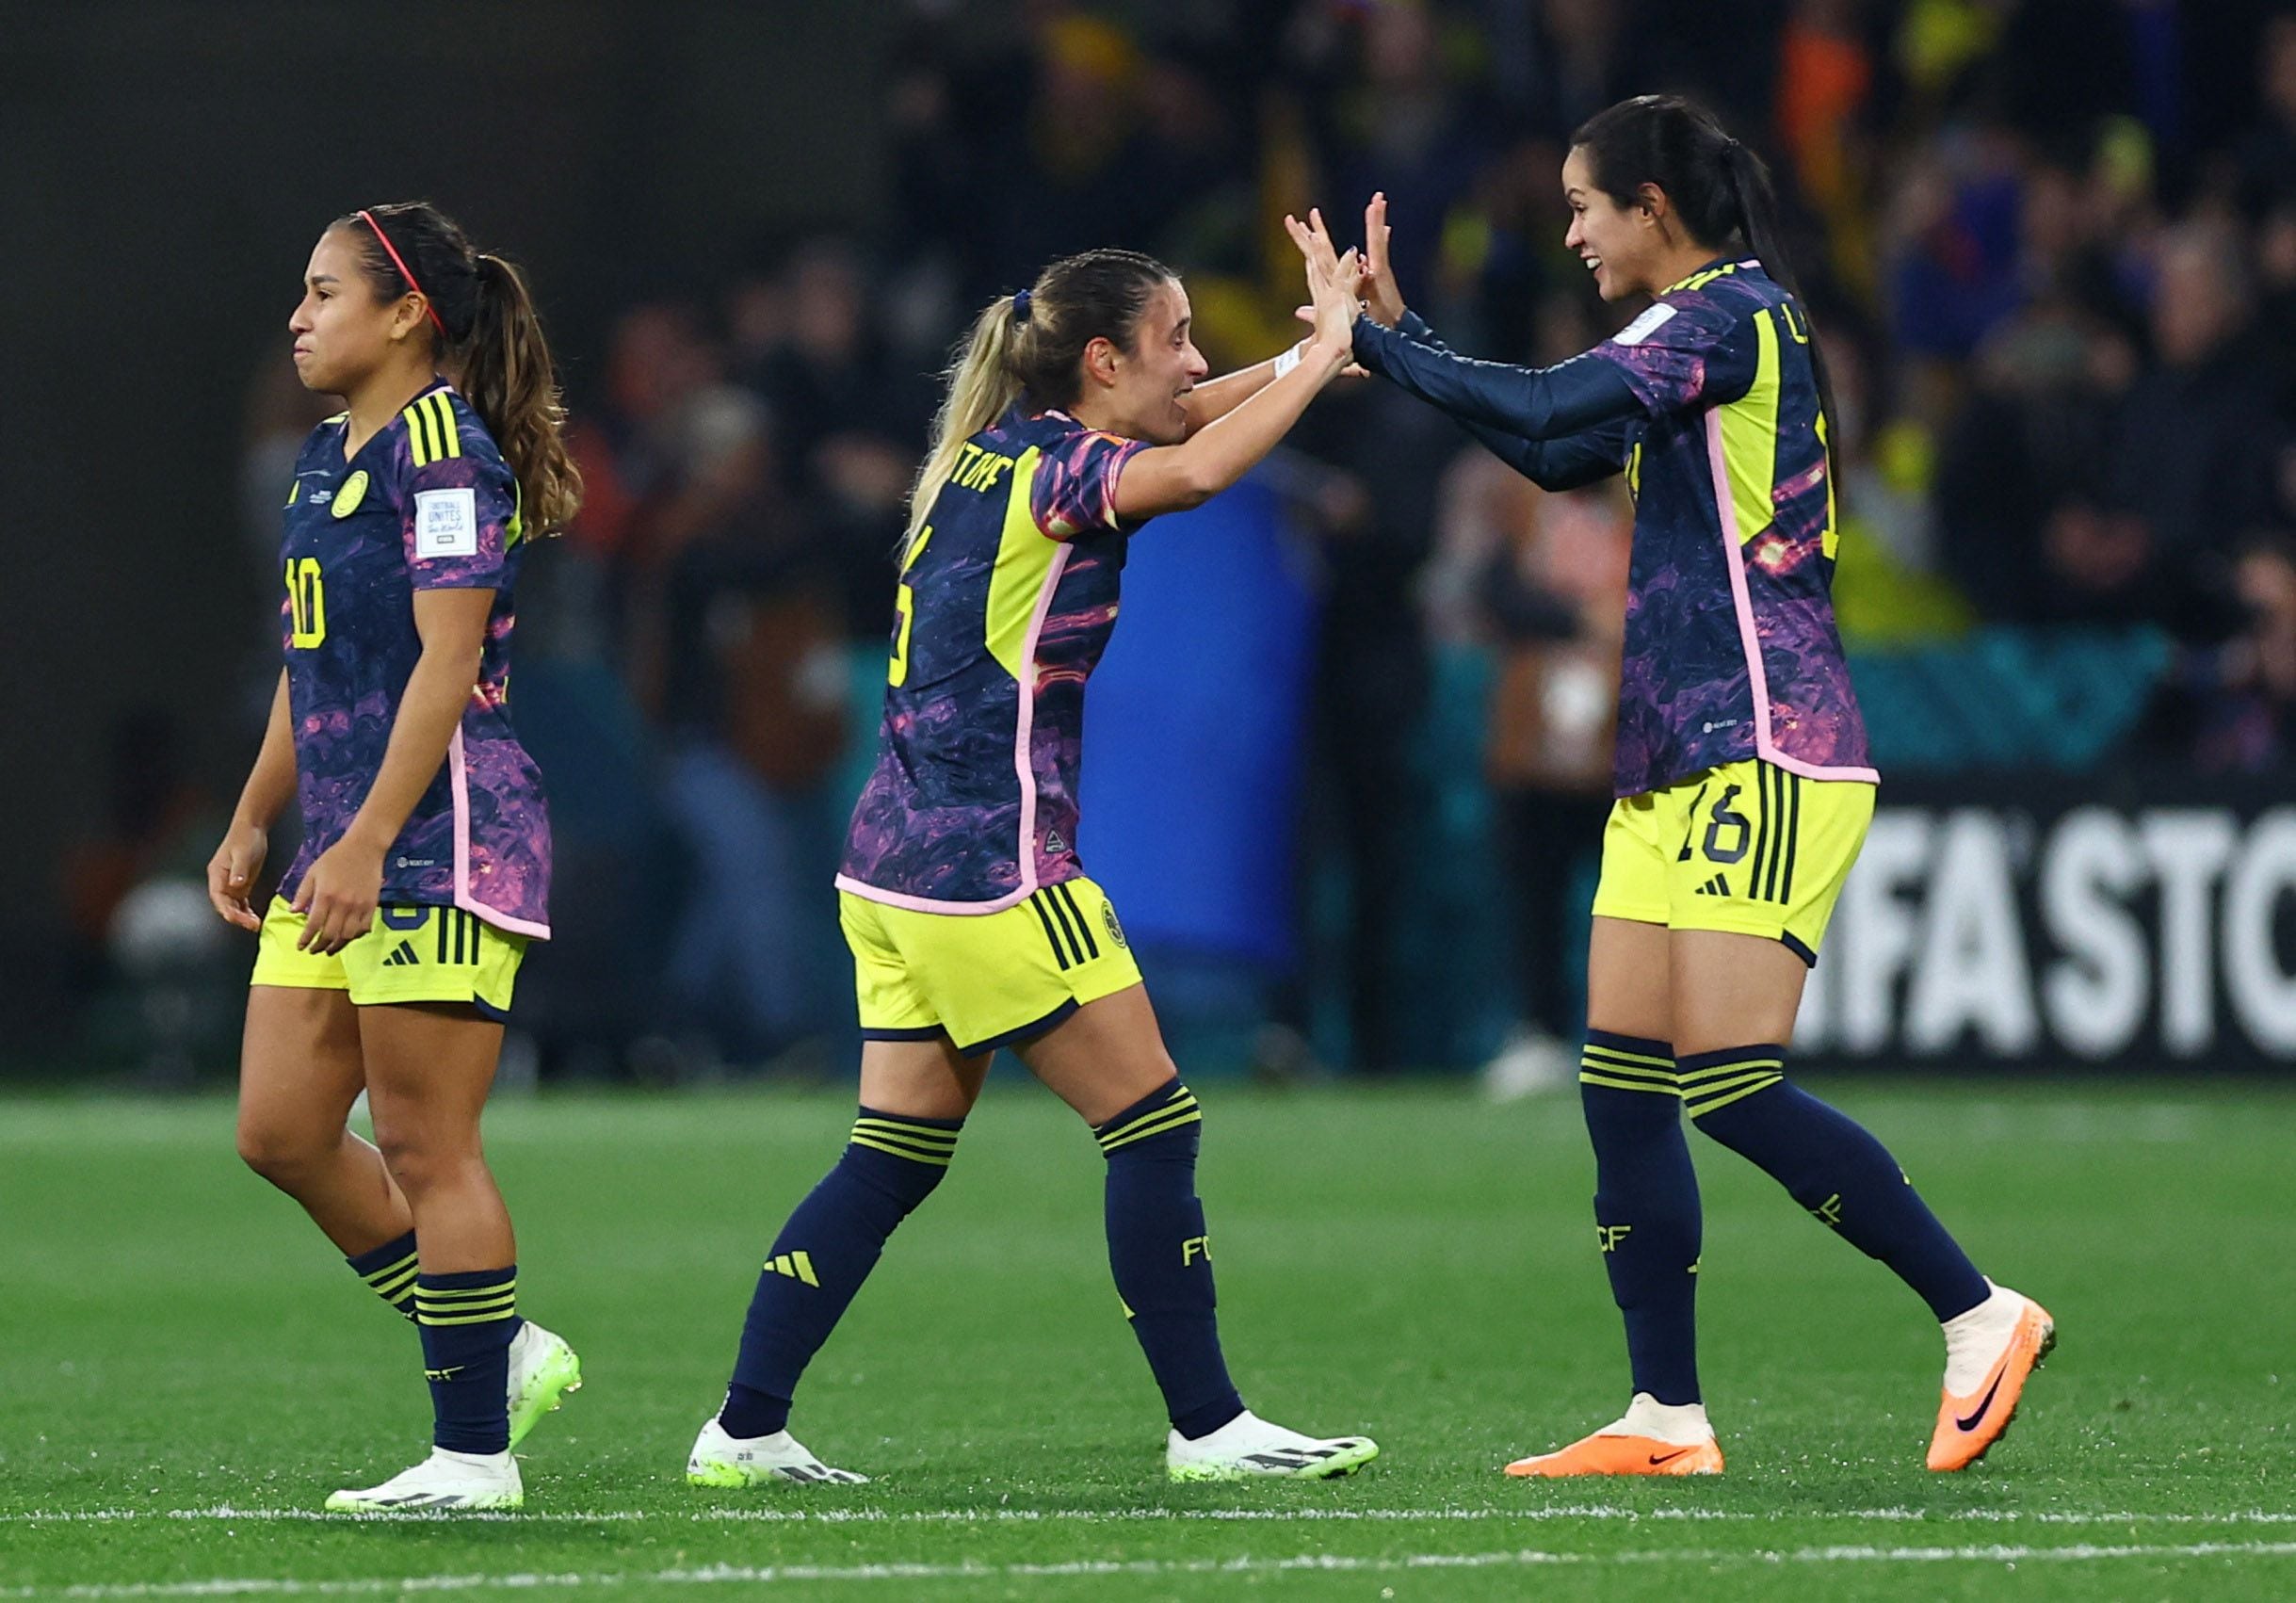 La selección Colombia volverá a jugar algunos partidos amistosos antes del torneo femenino de fútbol en los Juegos Olímpicos de París 2024 - crédito REUTERS/Hannah Mckay